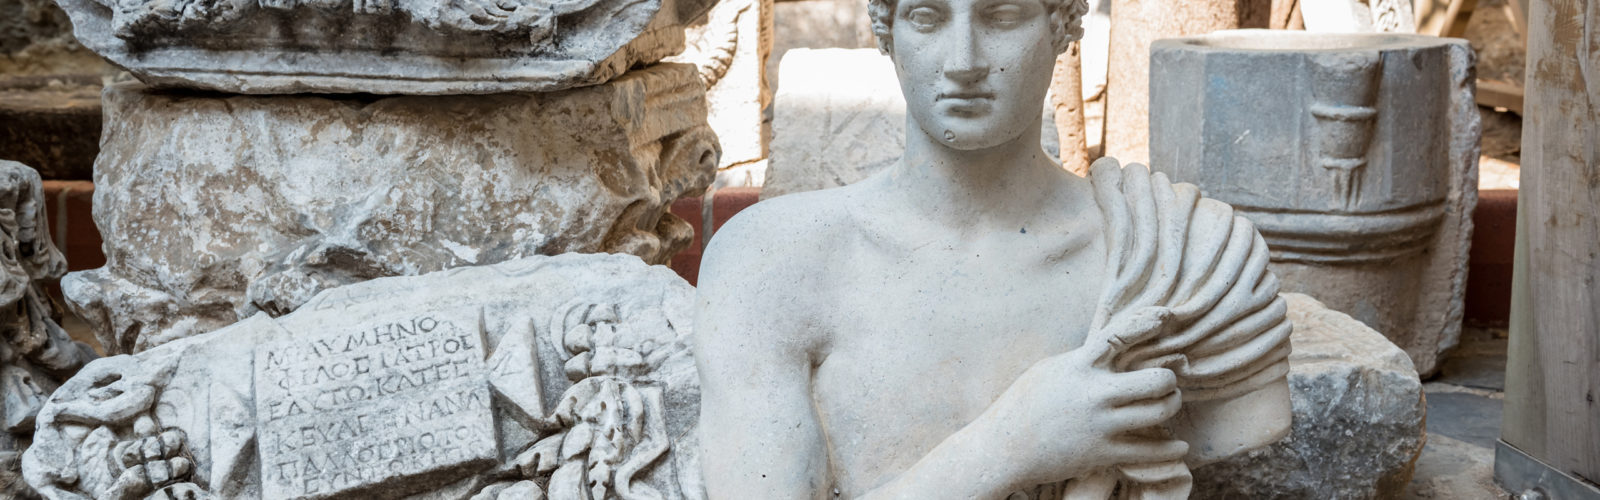 Roman marble sculpture at Bodrum Castle